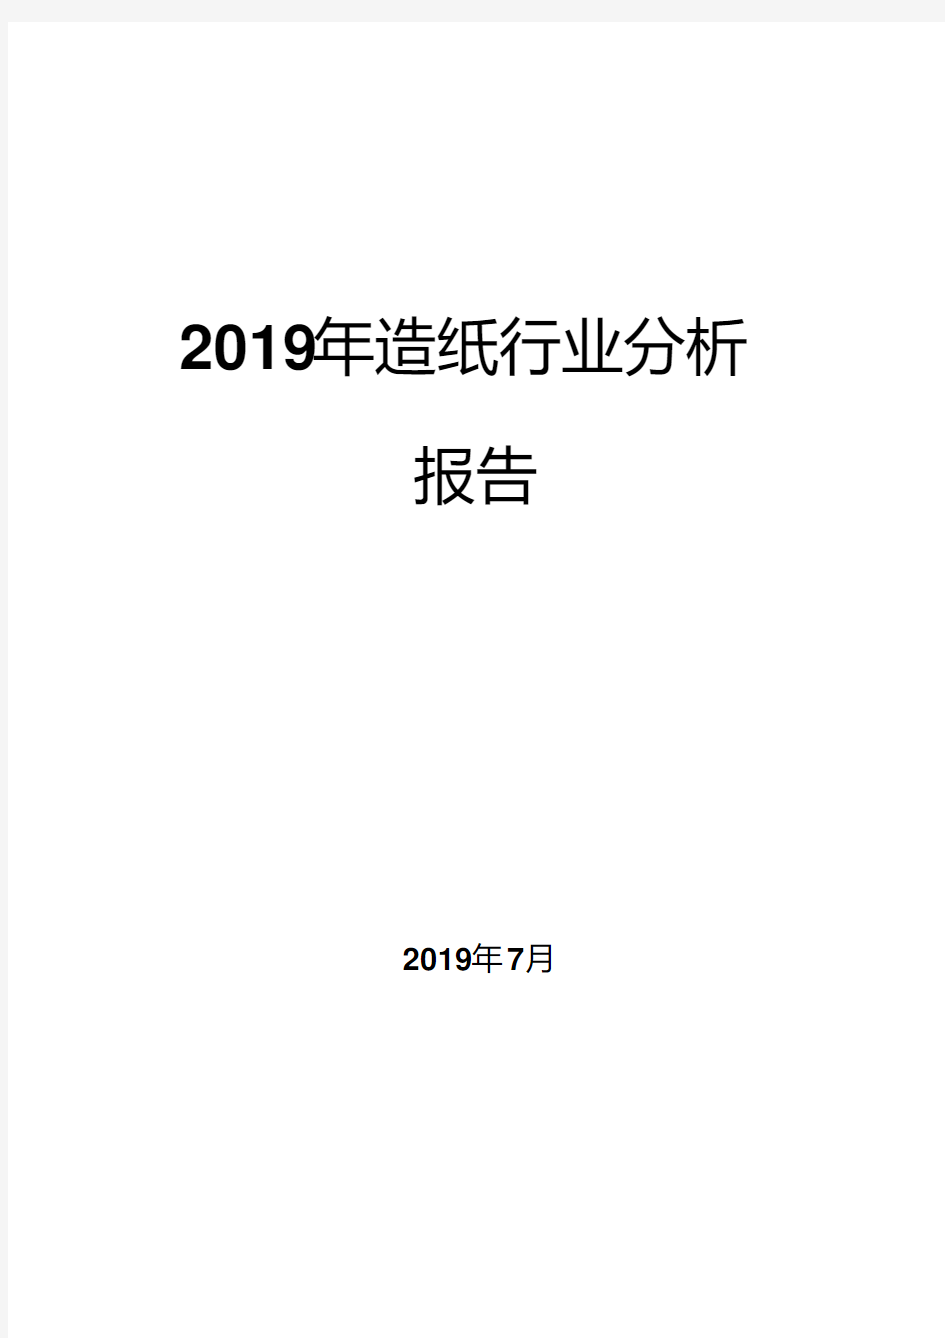 2019年造纸行业分析报告